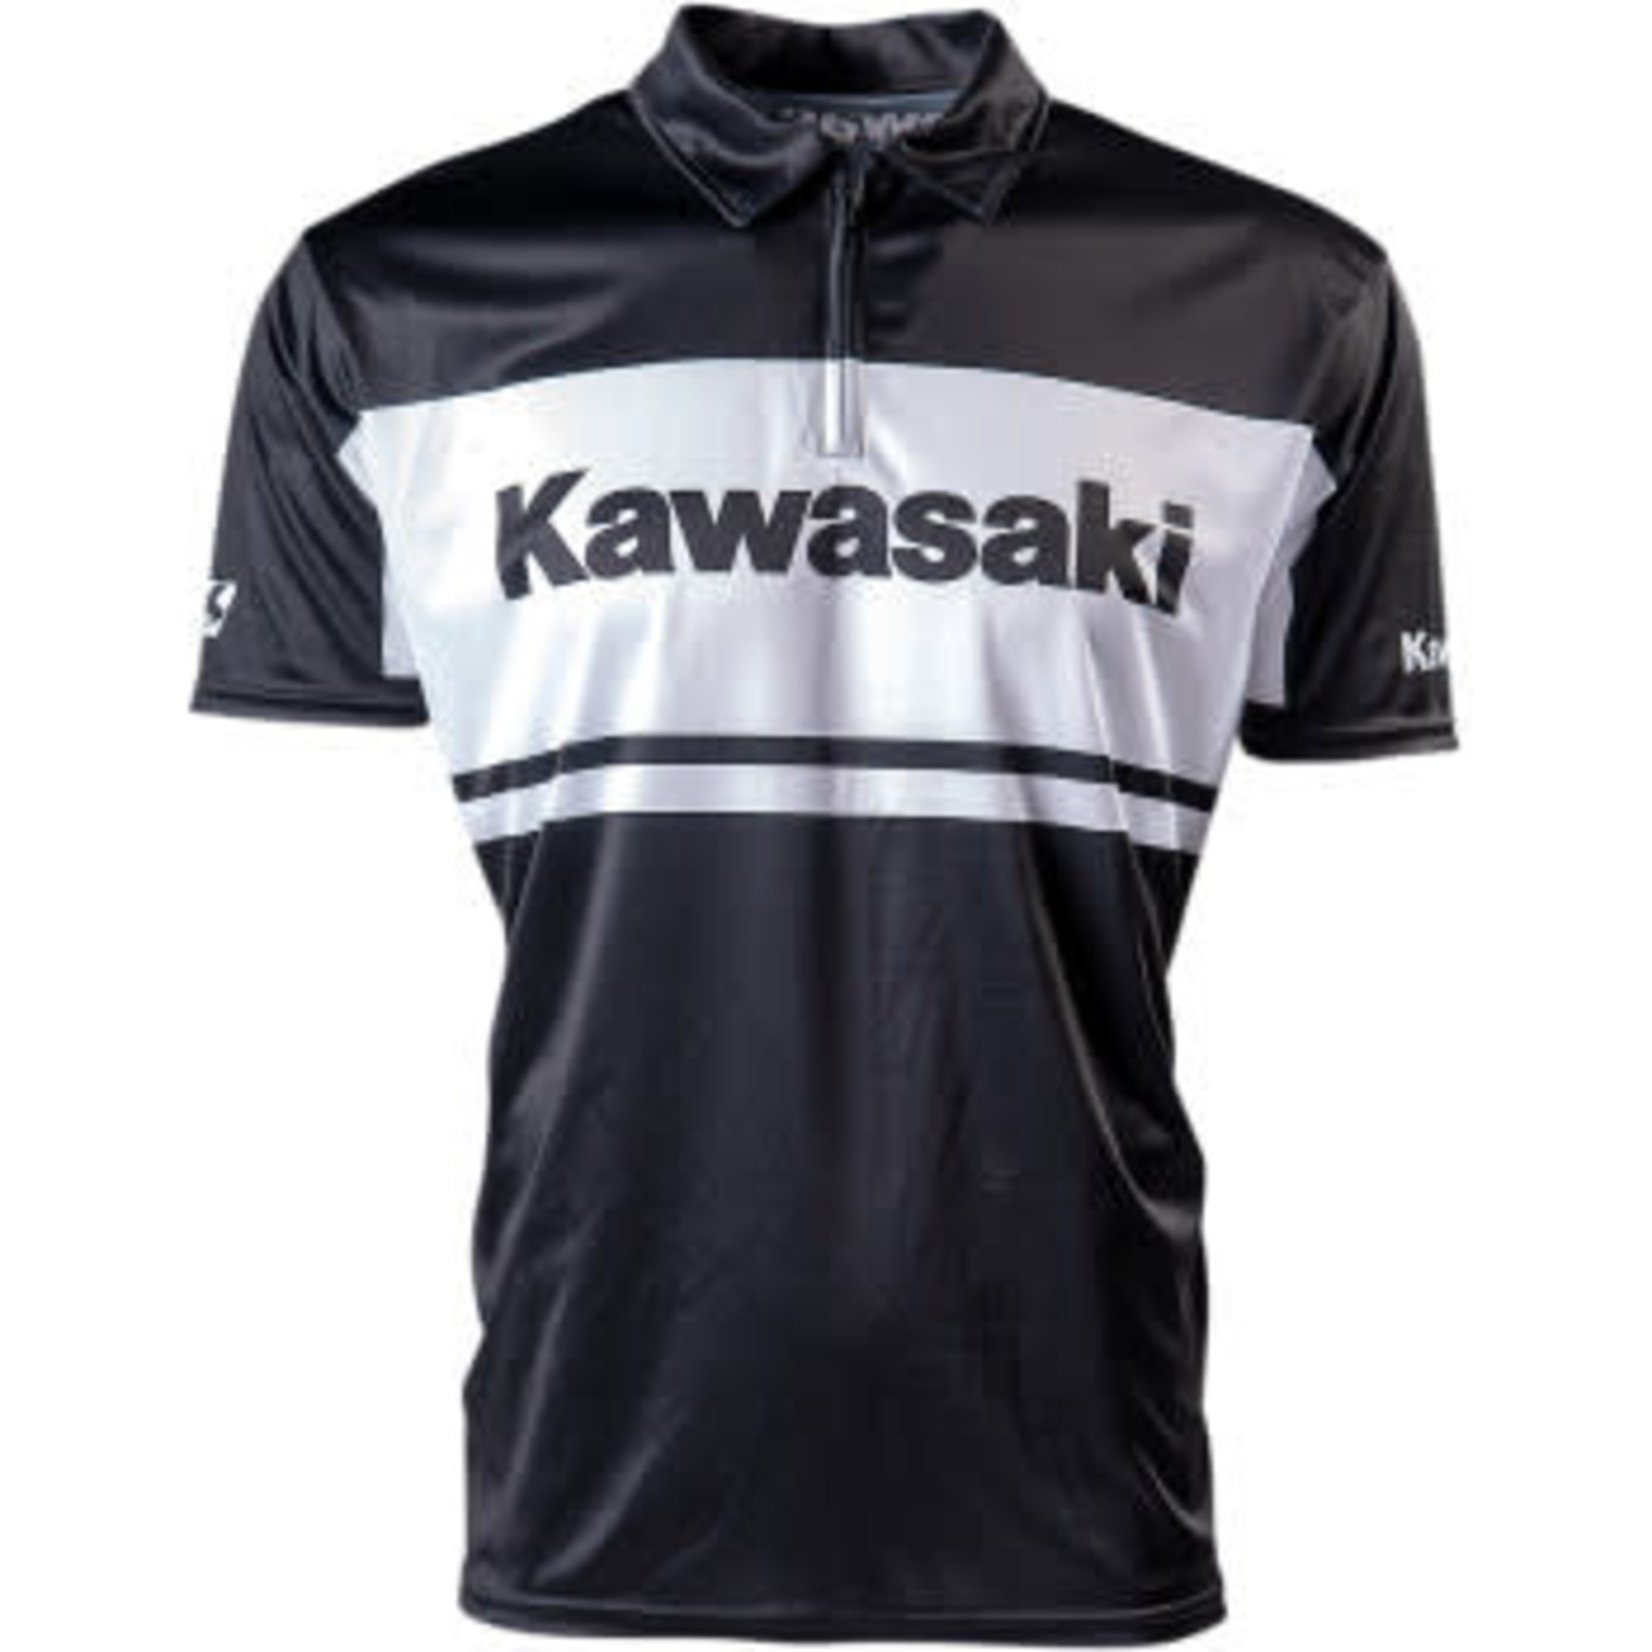 KAWASAKI Kawasaki Team Pit Shirt